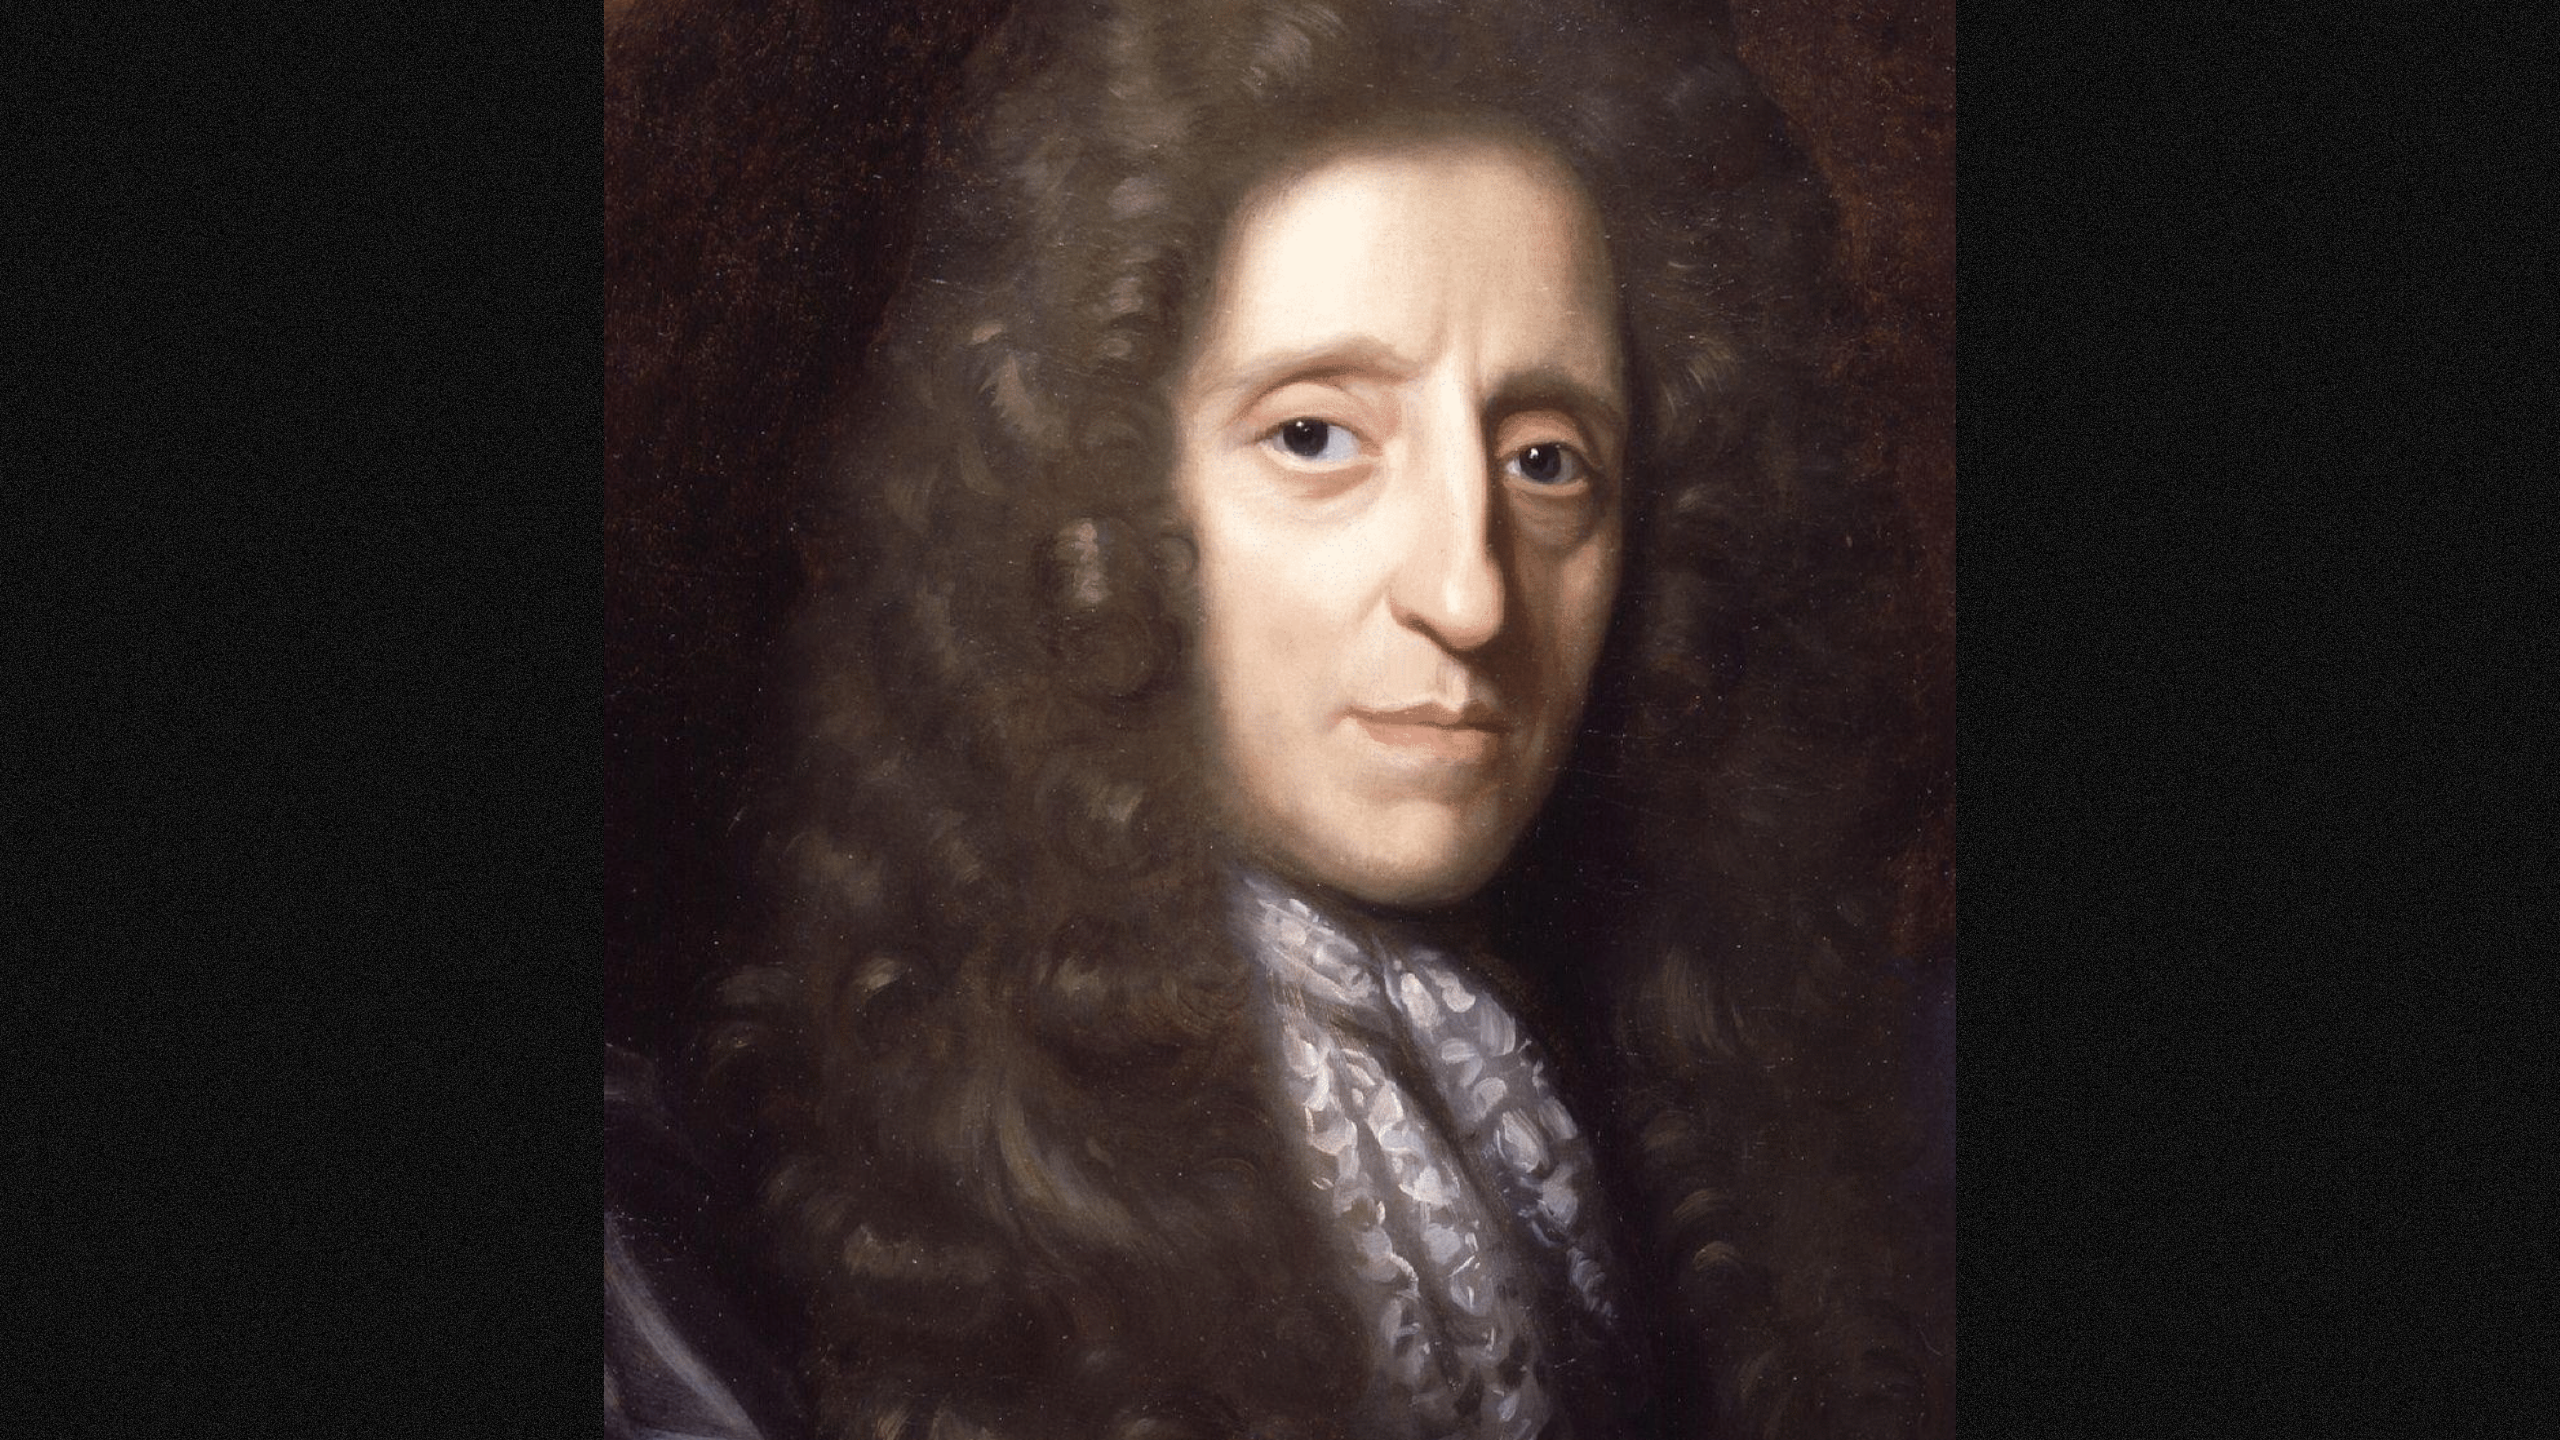 Herman Verelst, Portrait of John Locke, National Portrait Gallery, London (Photo by Dcoetzee / Wikimedia Commons)